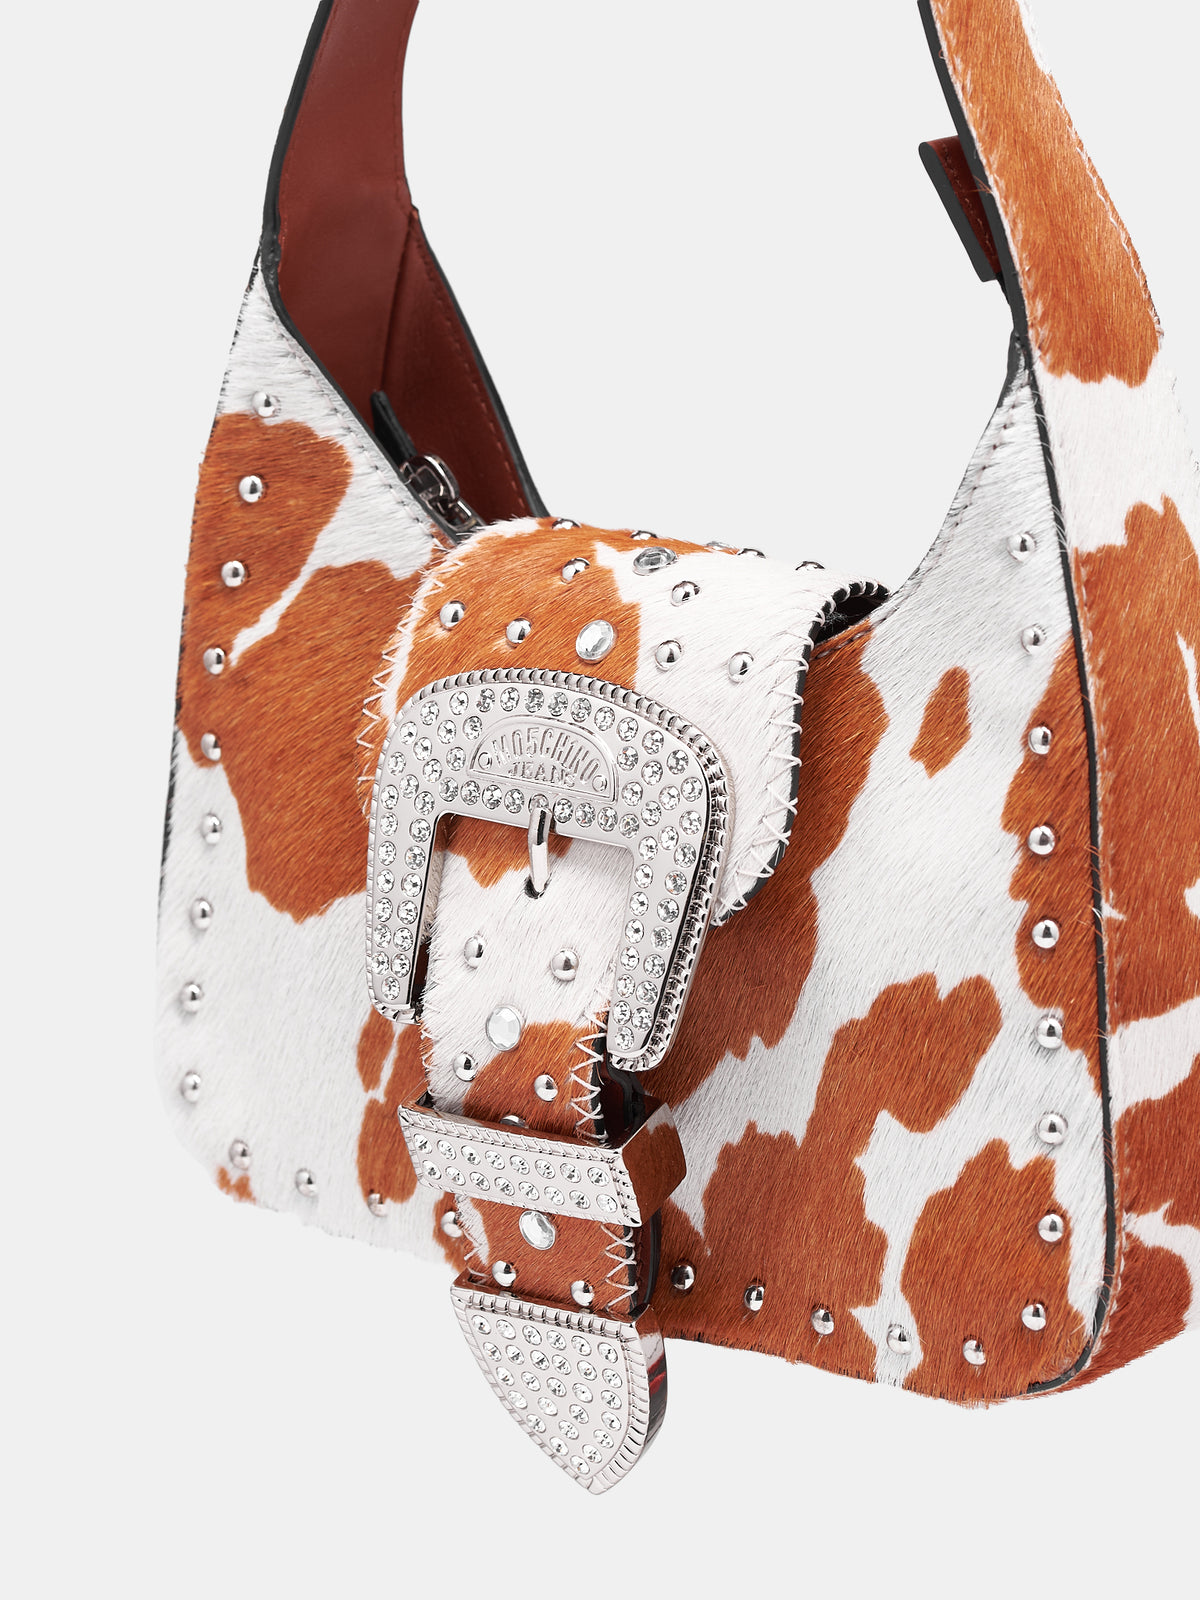 Maxi Buckle Pony Hair Handbag (A3116-8797-188-BROWN)